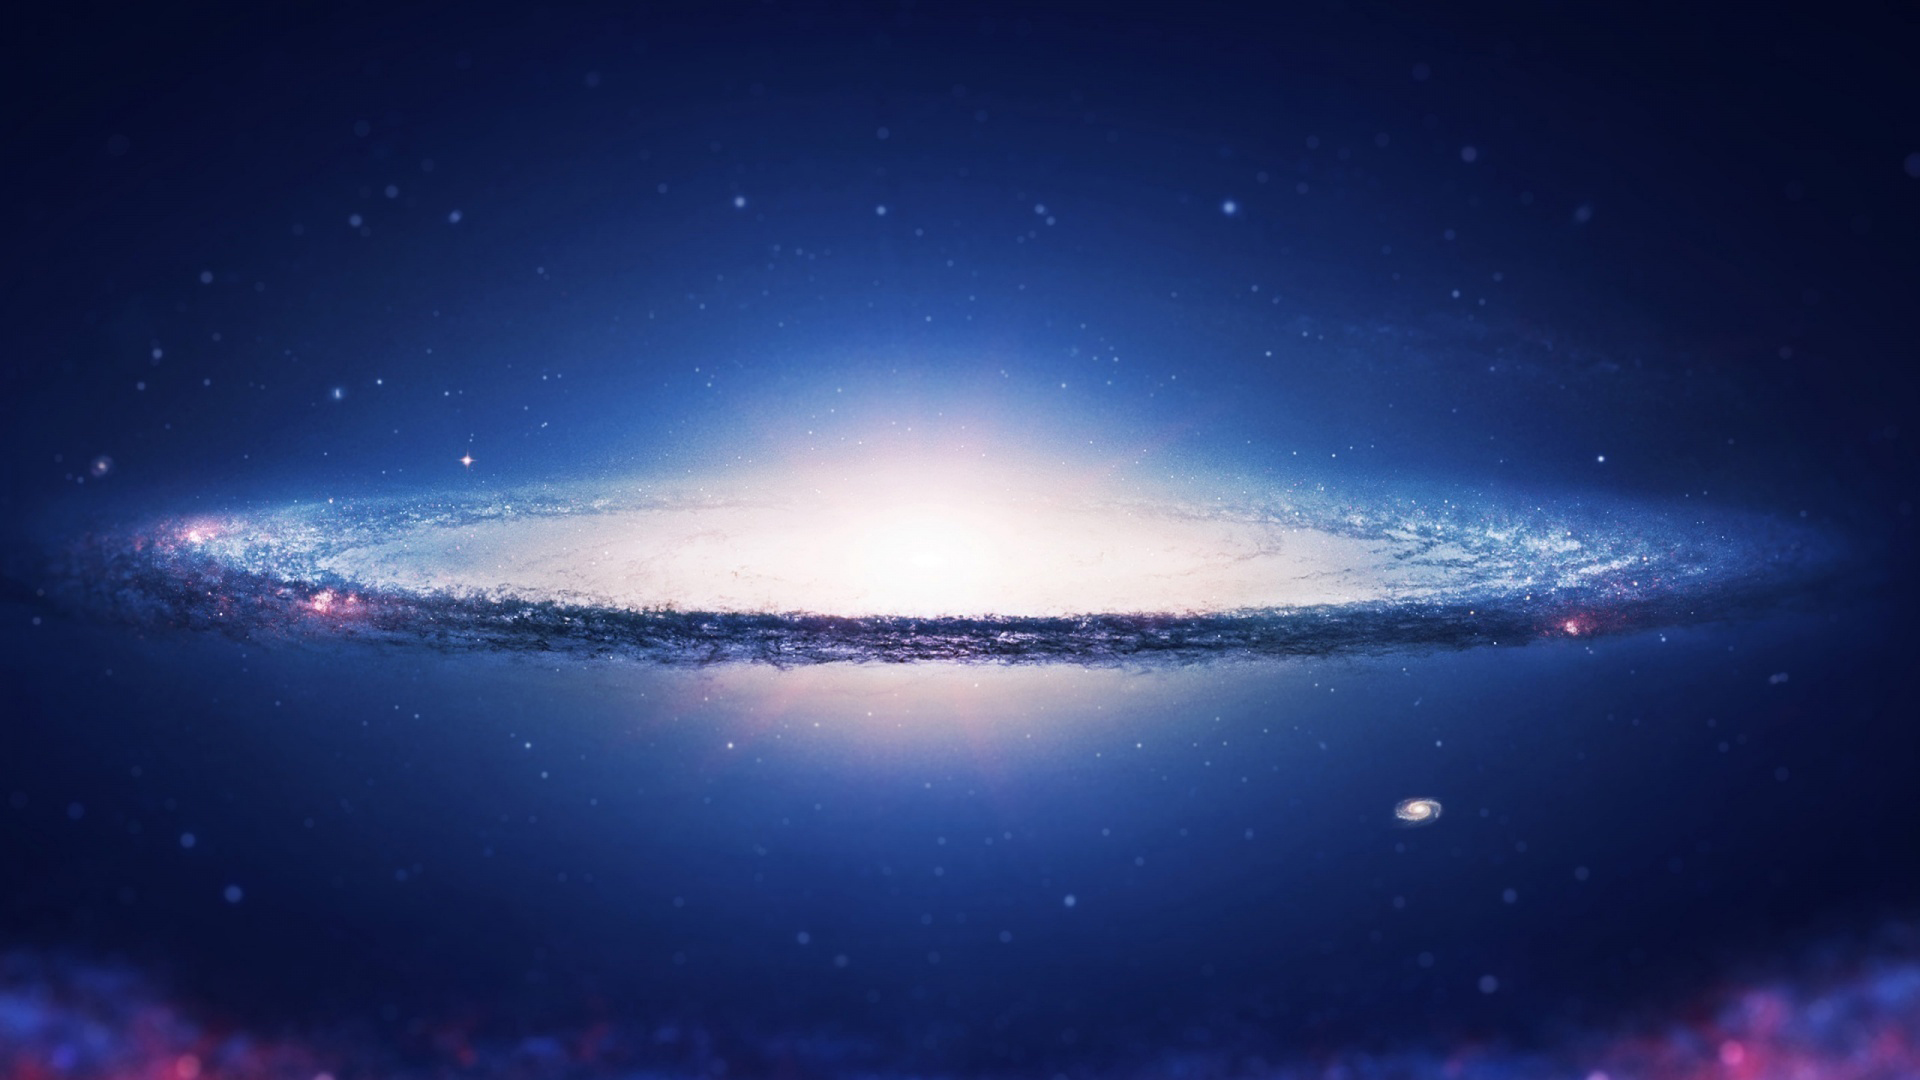 Hình nền ngân hà: Gia nhập cuộc phiêu lưu hấp dẫn vào các vùng ngân hà xa xôi mà bạn chỉ cảm thấy bất lực trước vẻ đẹp tuyệt vời của chúng. Mỗi hình nền đều là một bức tranh tuyệt đẹp về vũ trụ và là sự lựa chọn hoàn hảo cho màn hình desktop của bạn.